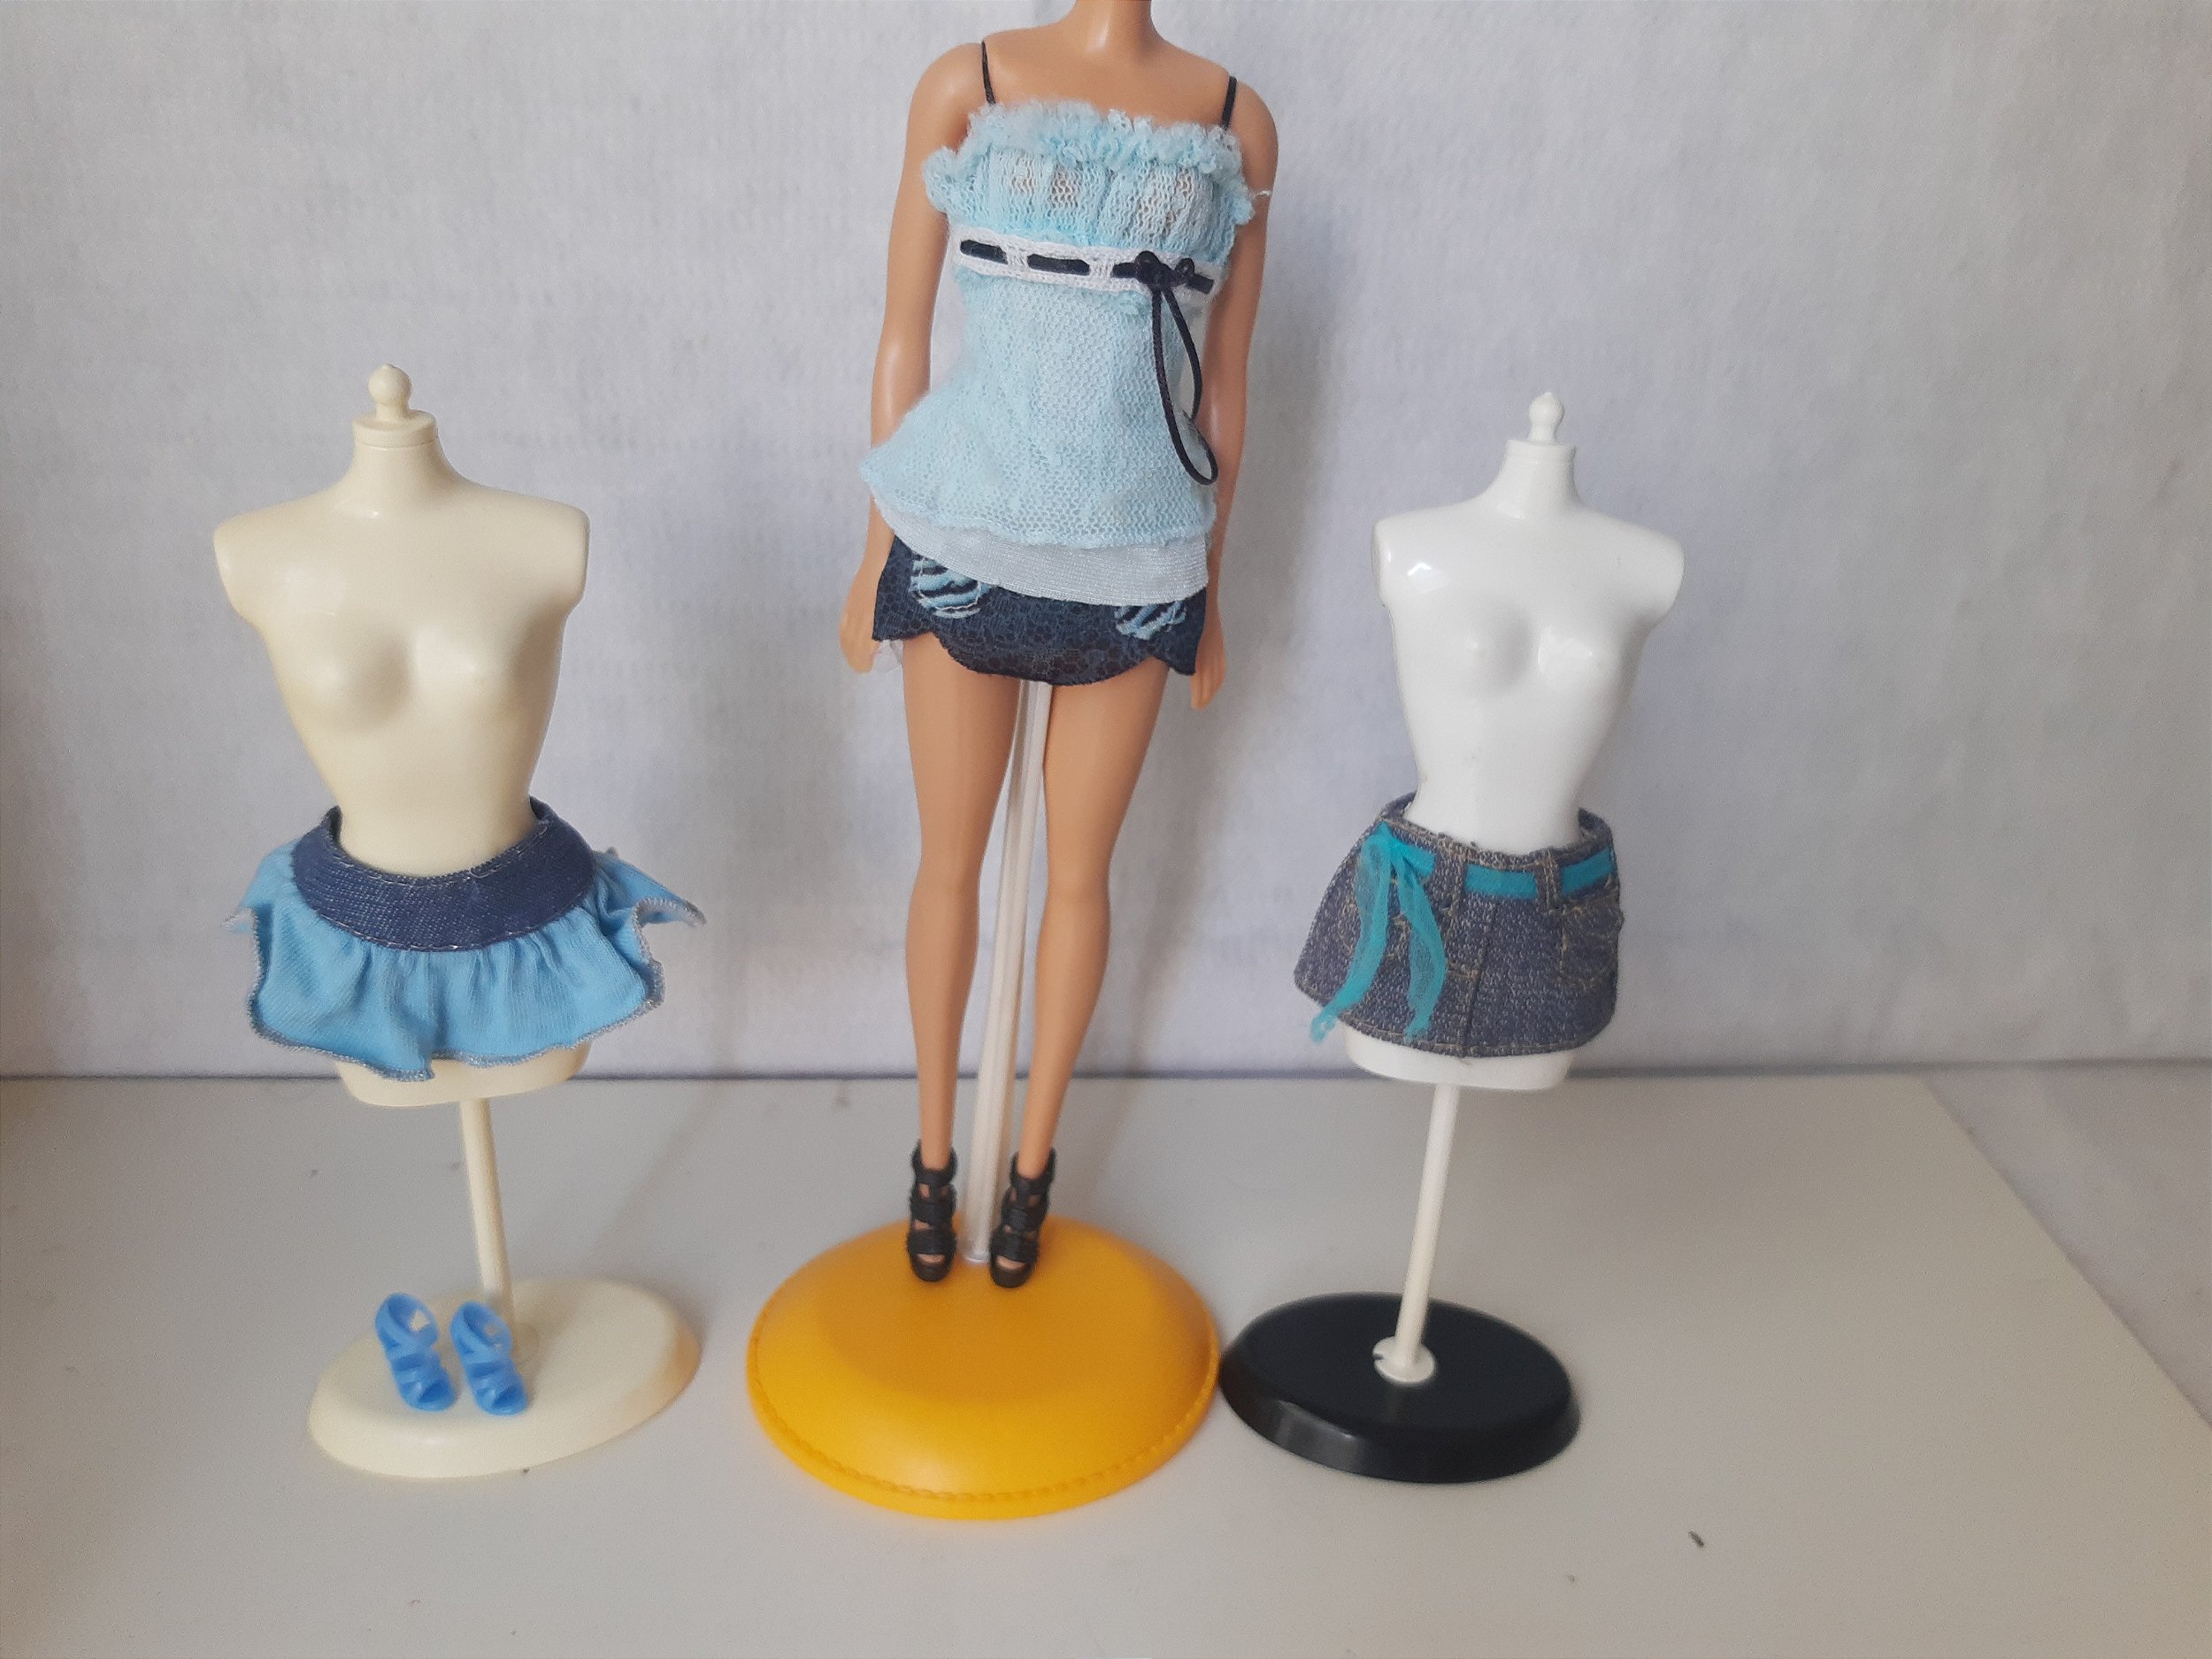 Lote de roupas da boneca Barbie (1) - Taffy Shop - Brechó de brinquedos